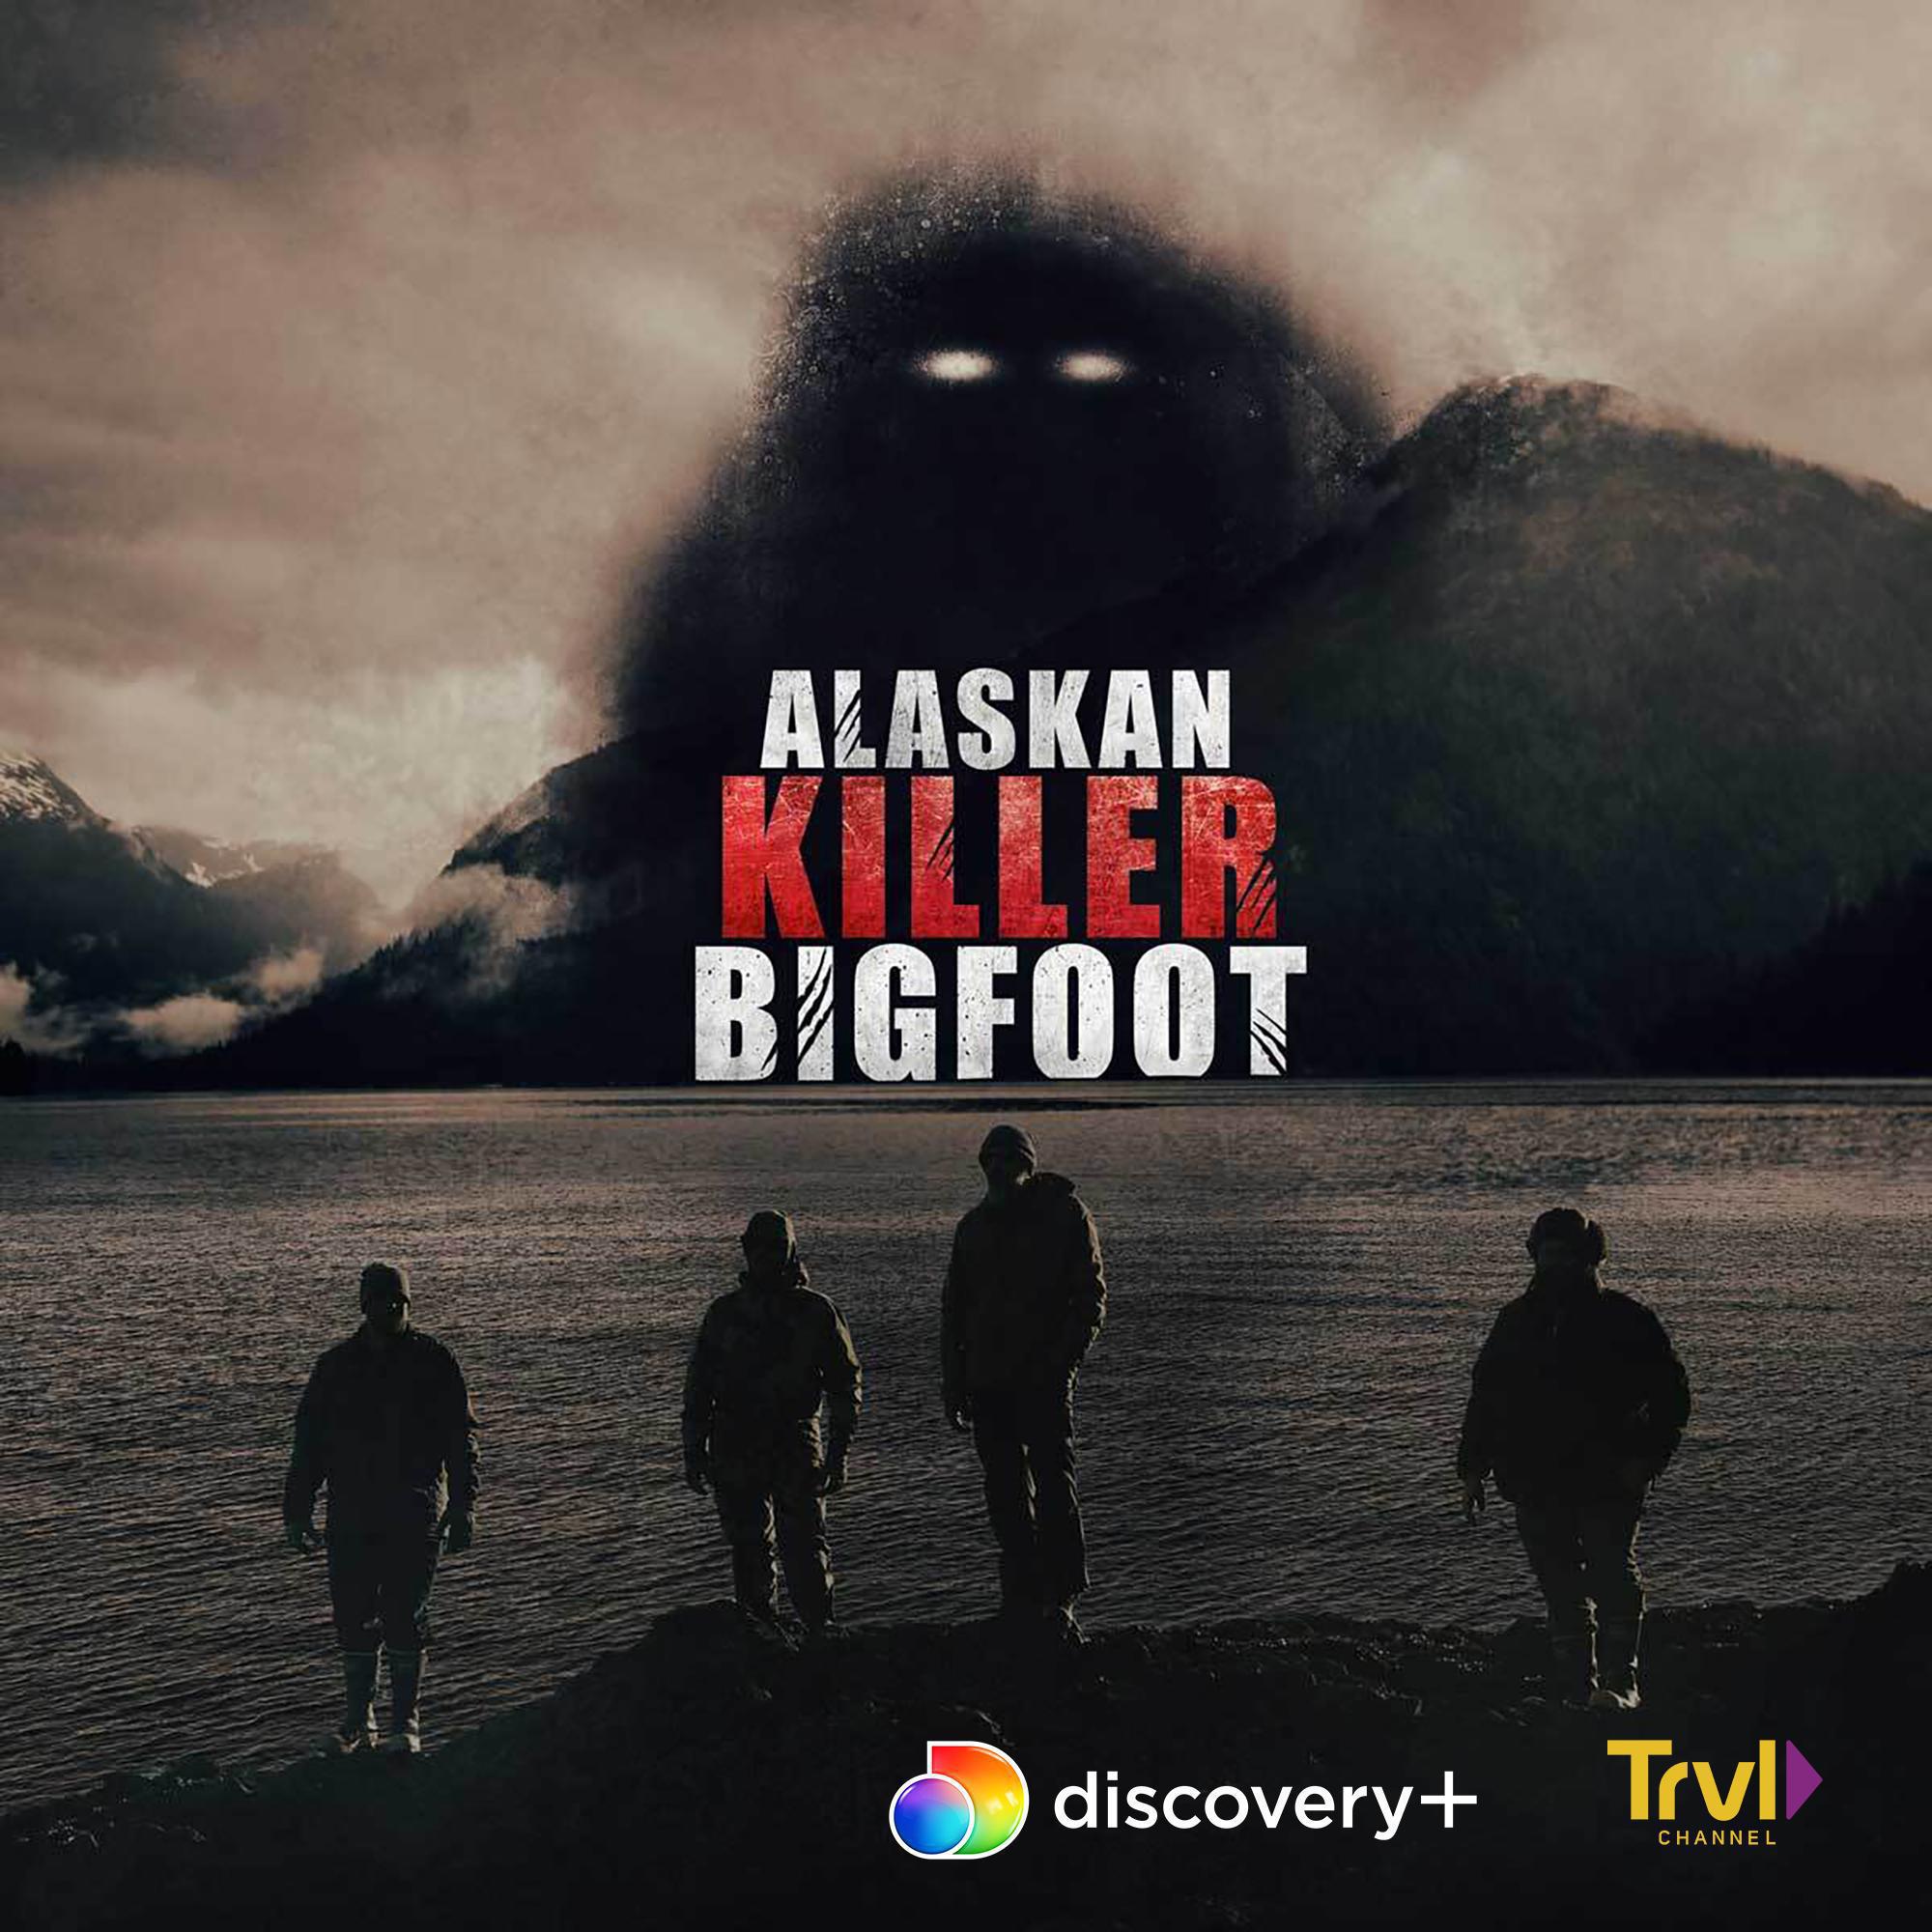 TV ratings for Alaskan Killer Bigfoot in Thailand. Discovery+ TV series